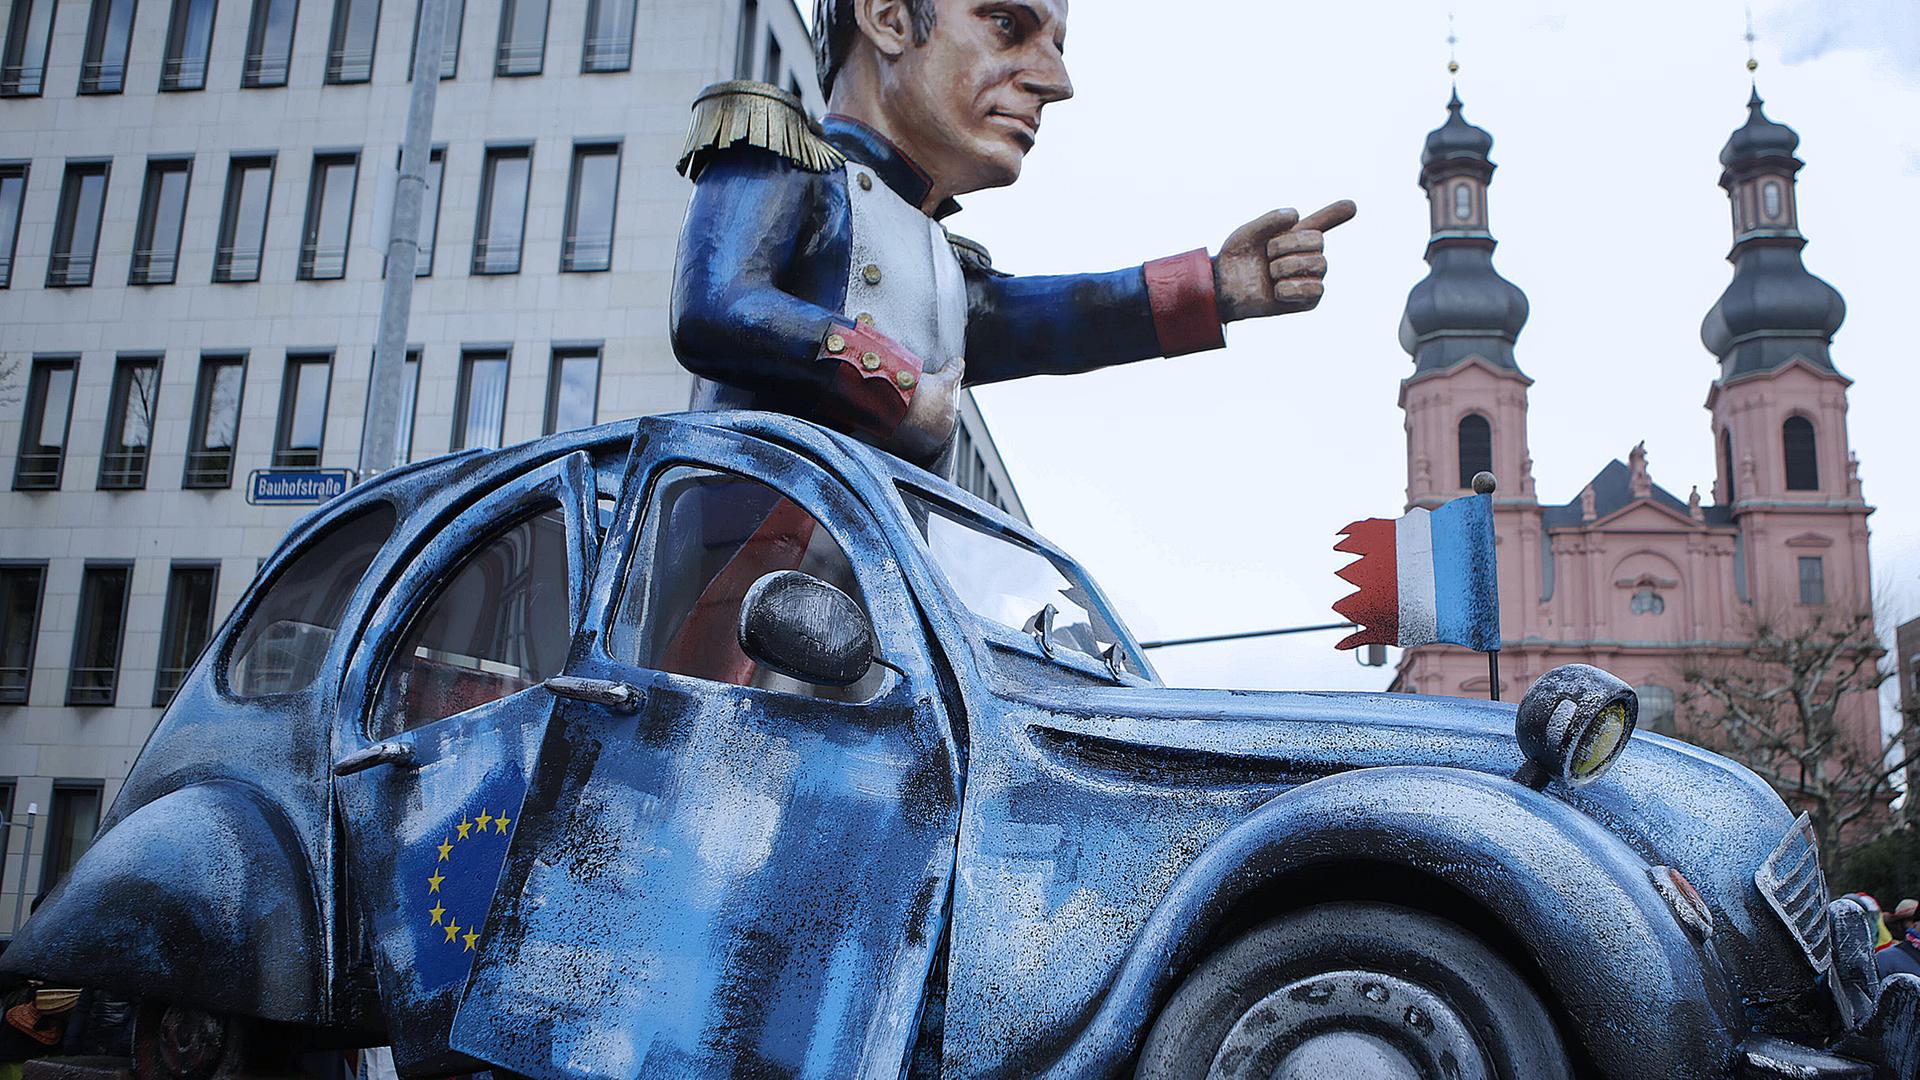 Archiv: Emanuel Macron durfte 2018 in seiner „Döschwo“ beim Rosenmontagszug in Mainz als Motivwagen mitfahren, aufgenommen am 12.02.2018 in Mainz